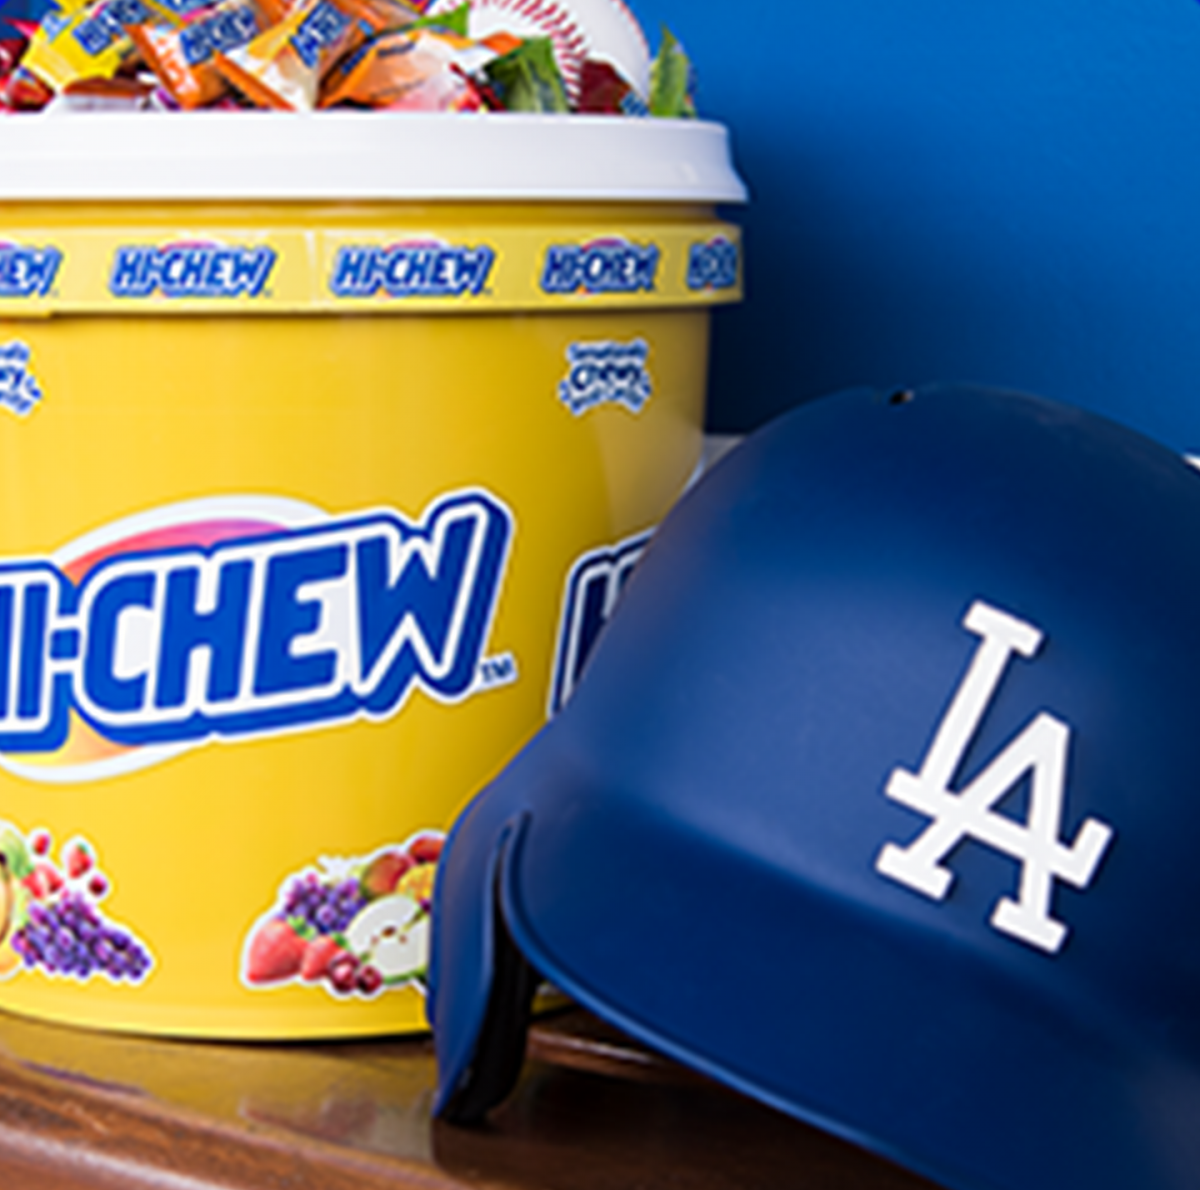 A bucket of Hi-Chew next to an LA Dodgers helmet